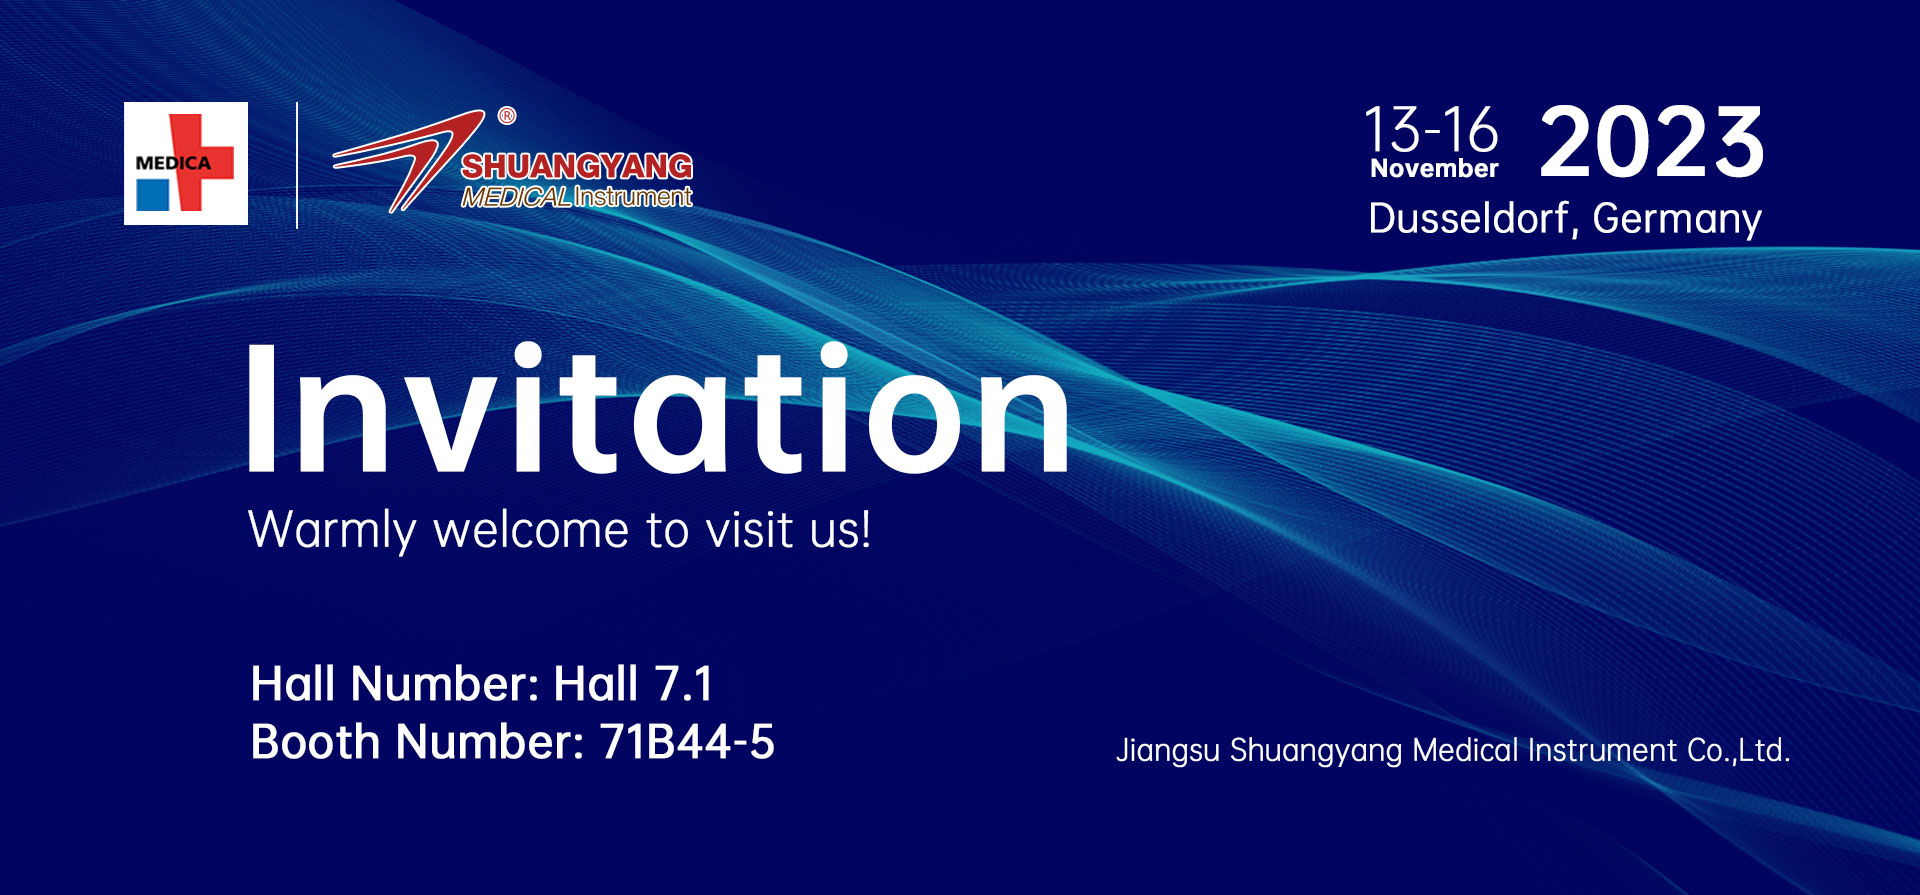 exhibition 2023 invitation 2